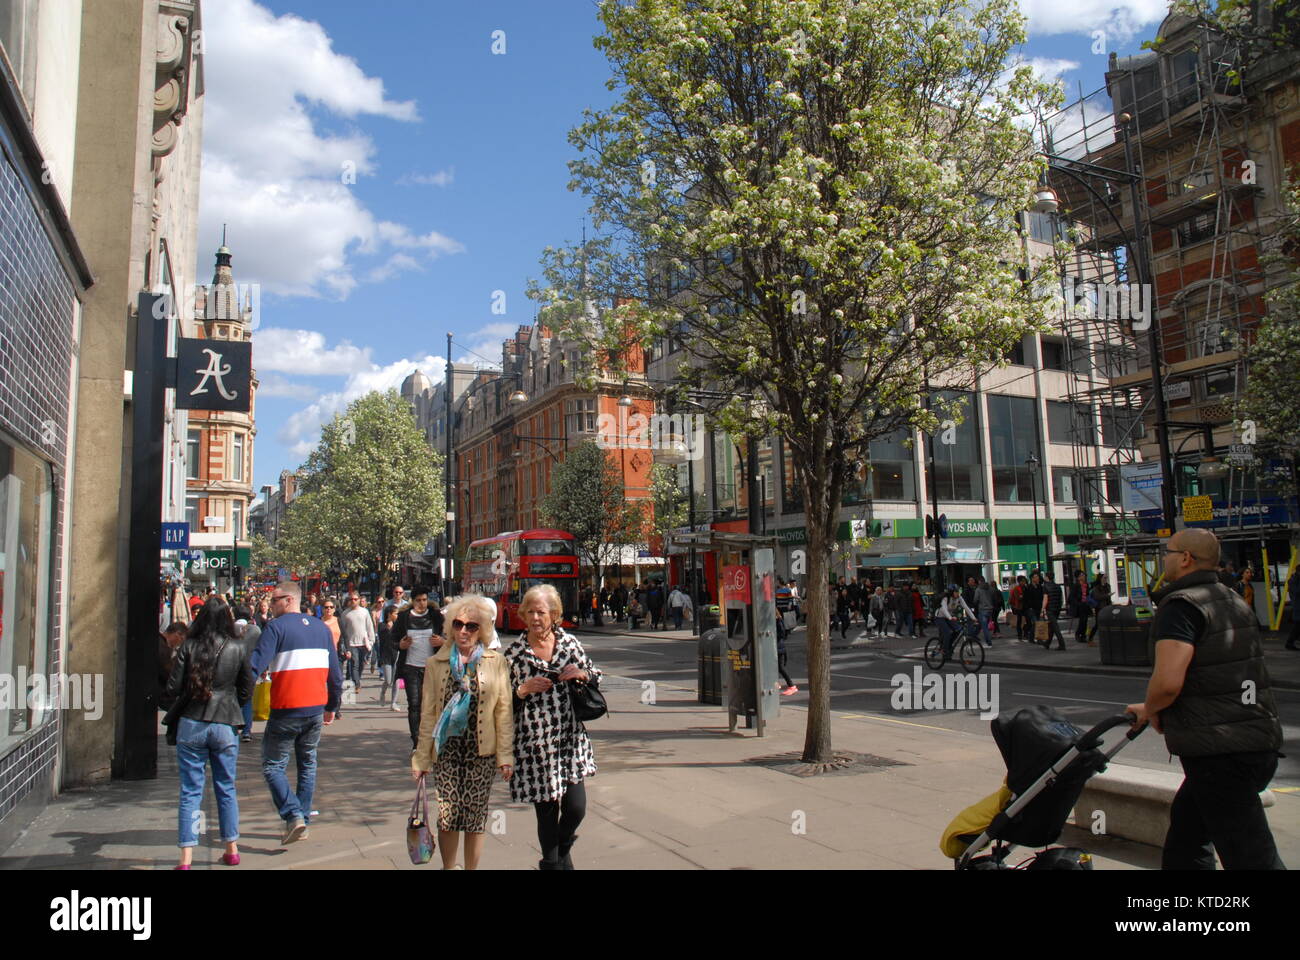 Londres, Reino Unido - 11 de abril de 2015: La vida de la ciudad de Oxford Street. Foto de stock